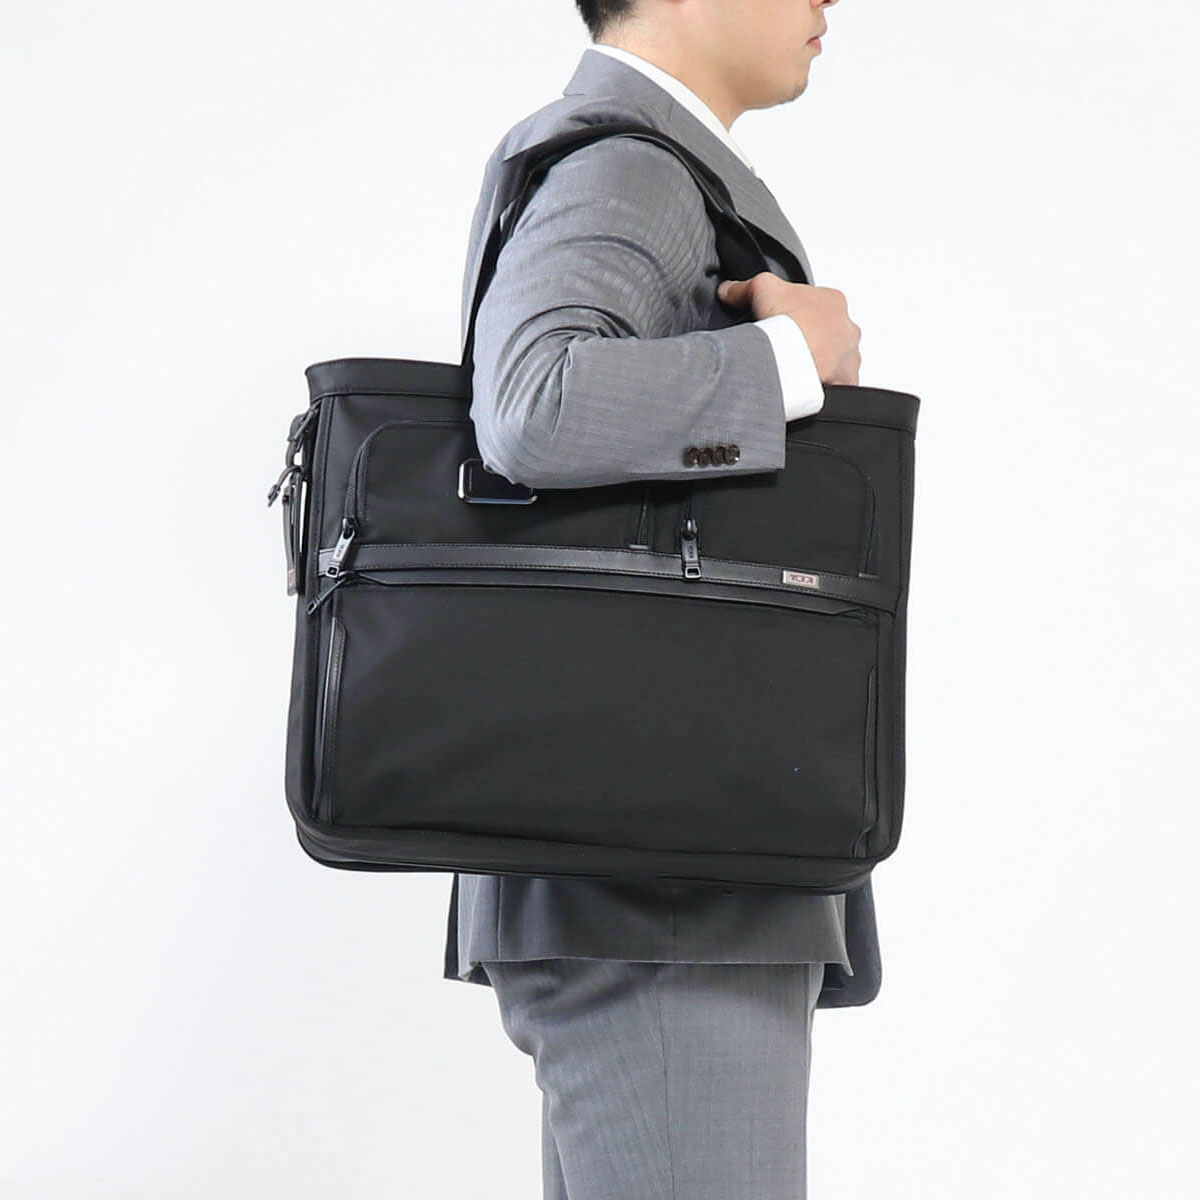 48％割引ブラック系2021人気特価 TUMI エクスパンダブルトートバッグ Limited Edition 極美品 ビジネスバッグ バッグ